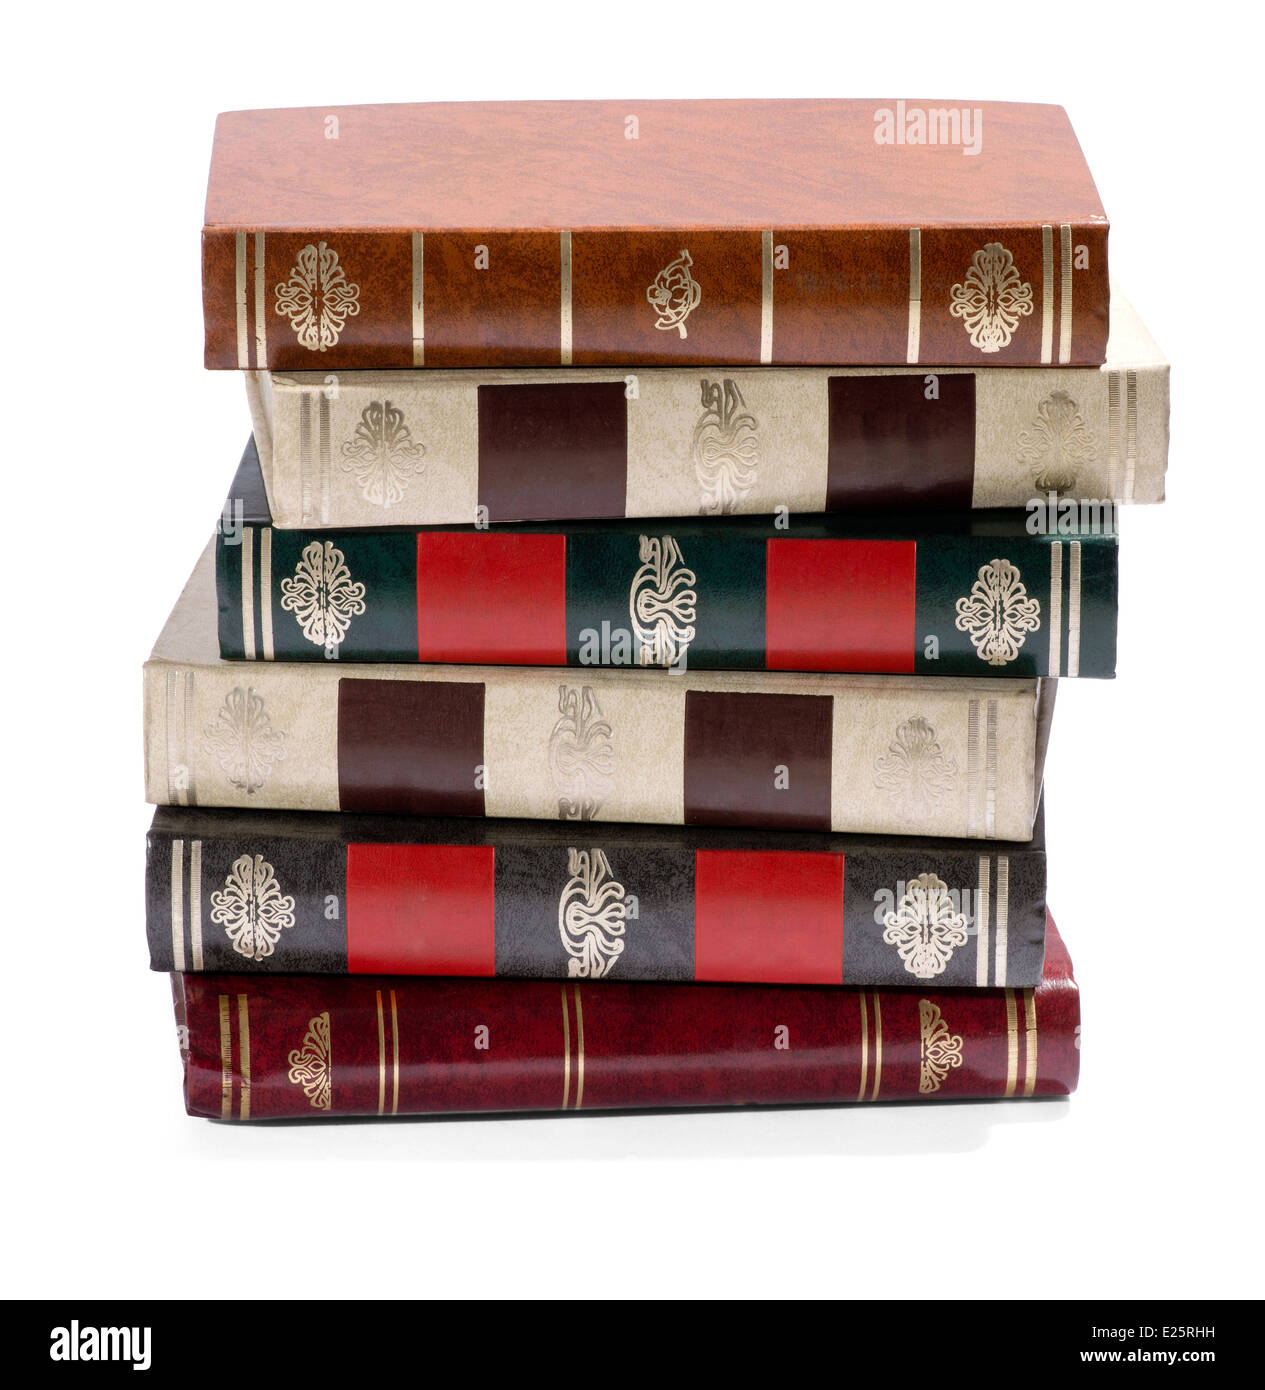 Stapeln von alten Bücher mit vergoldeten nachgerüstet Stacheln Stockfoto